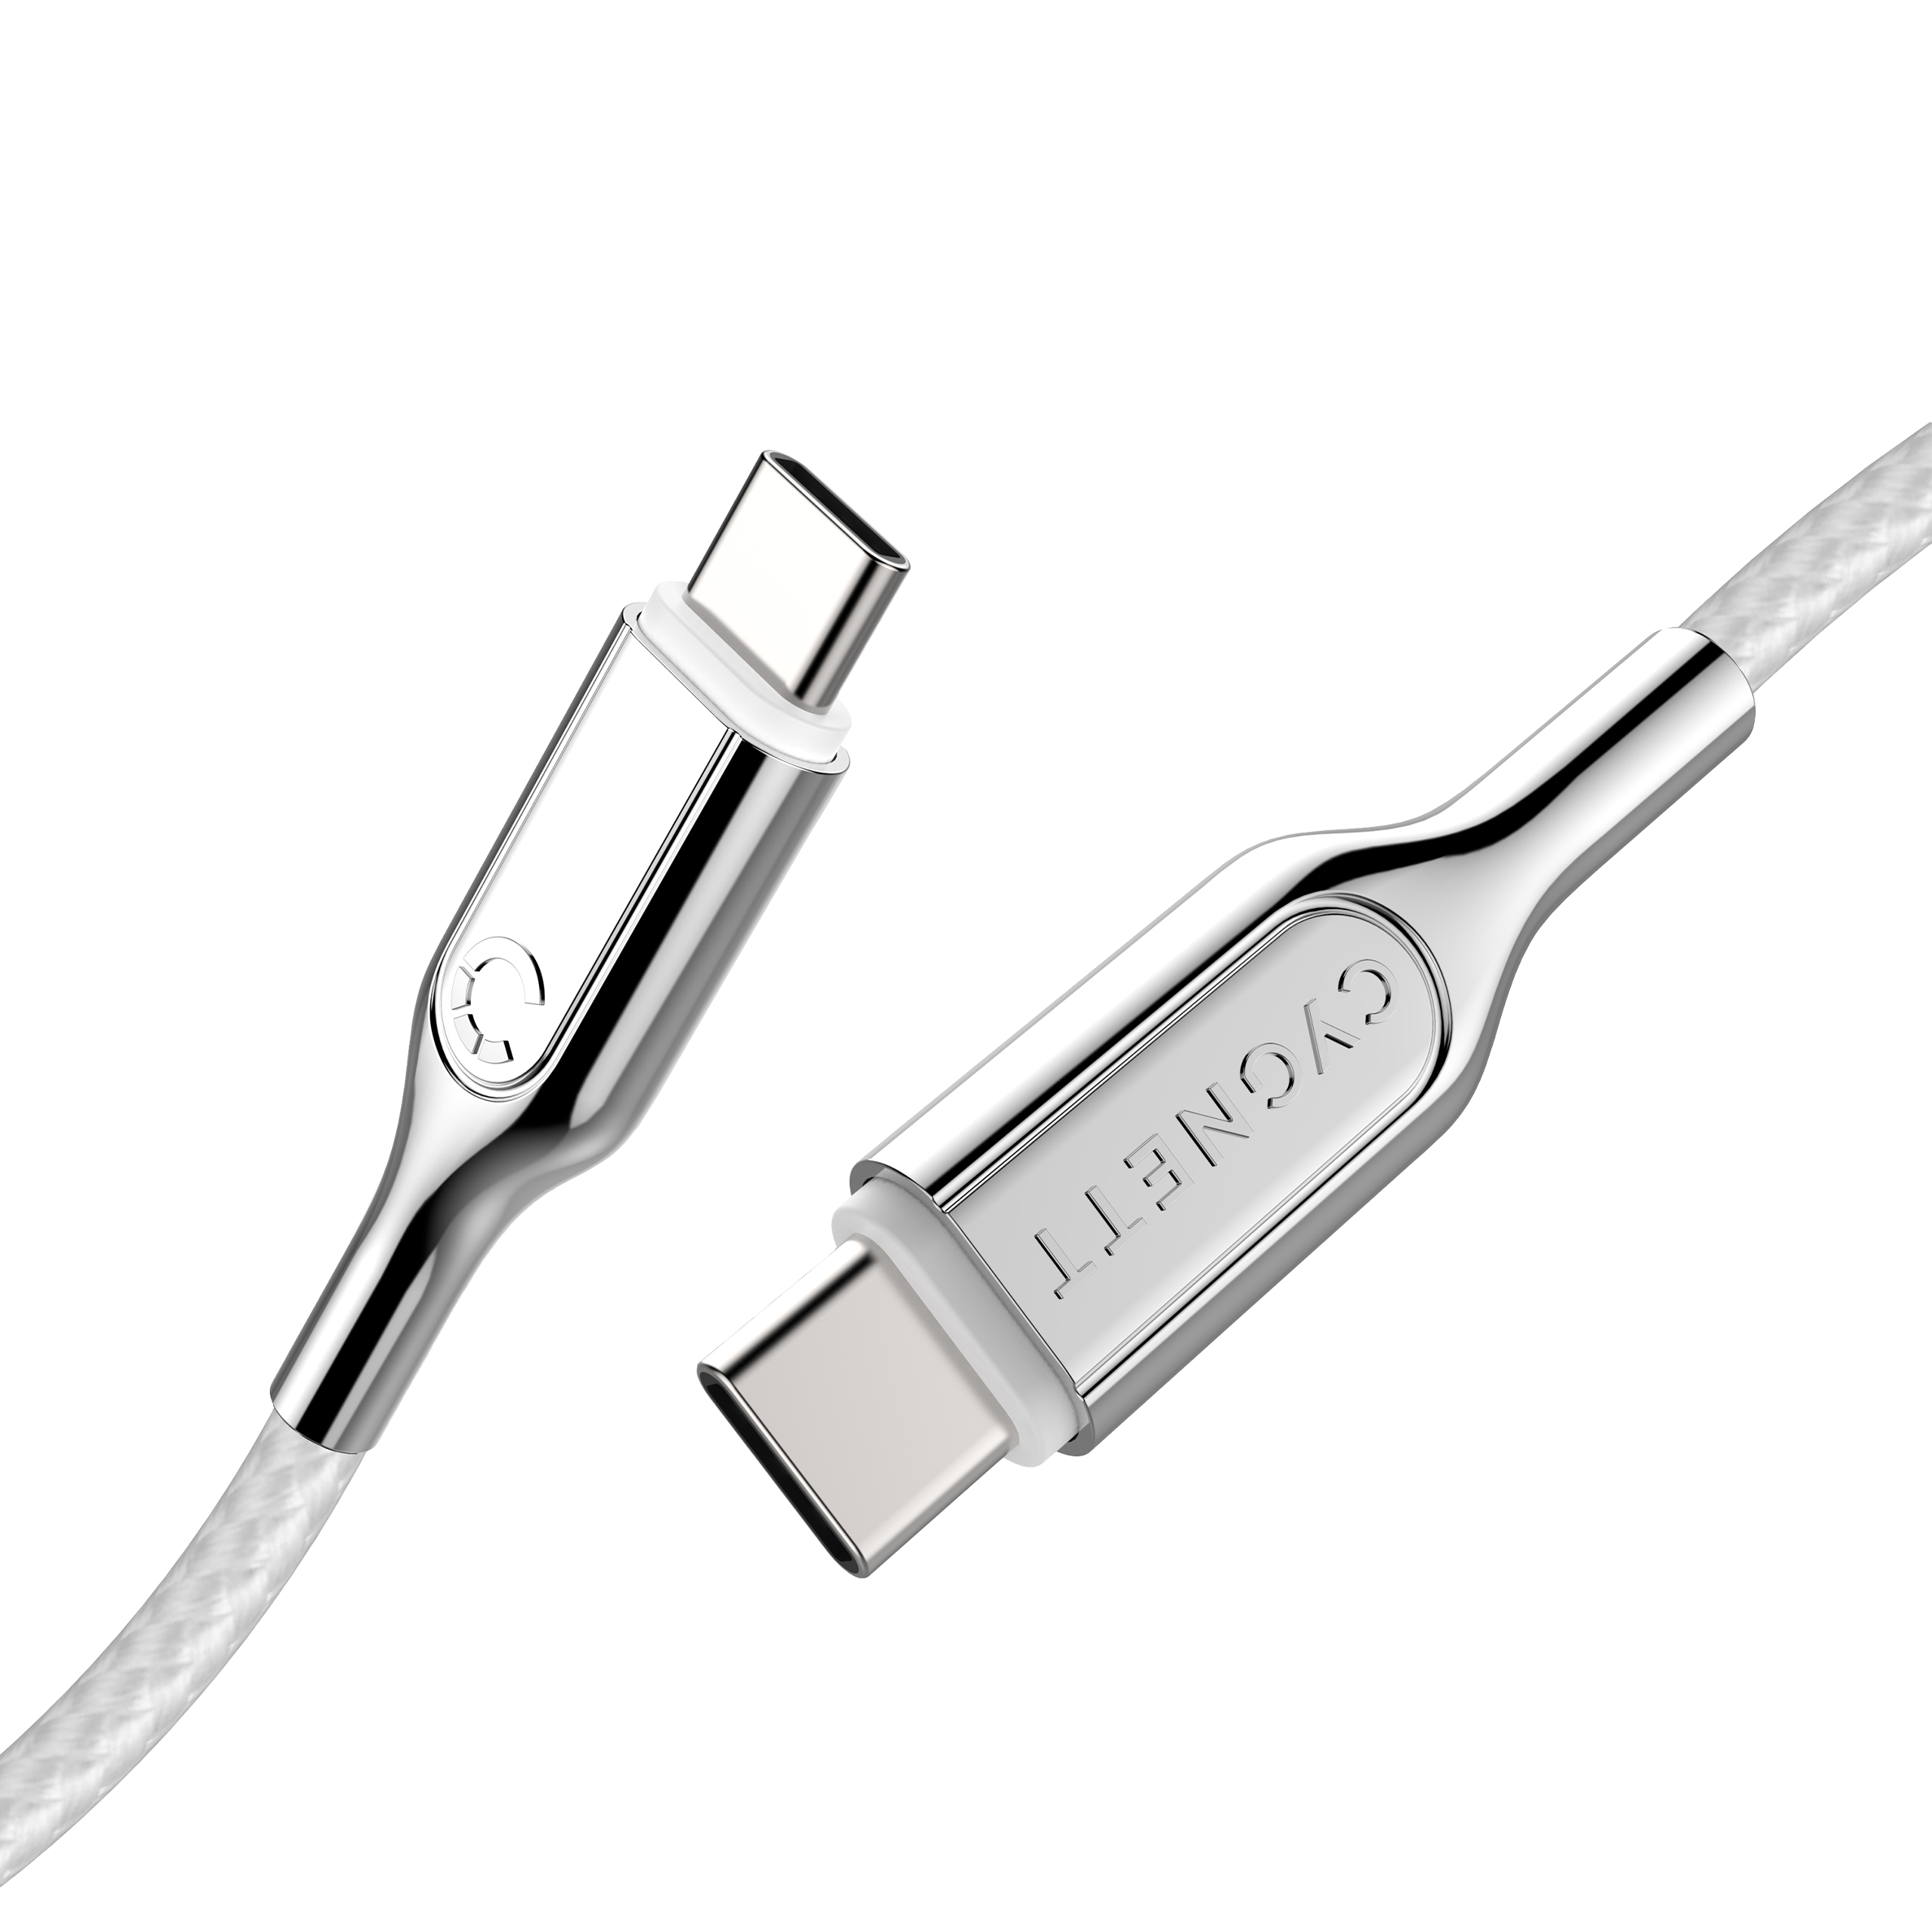 USB-C to USB-C (USB 2.0) Cable - White 2m - Cygnett (AU)